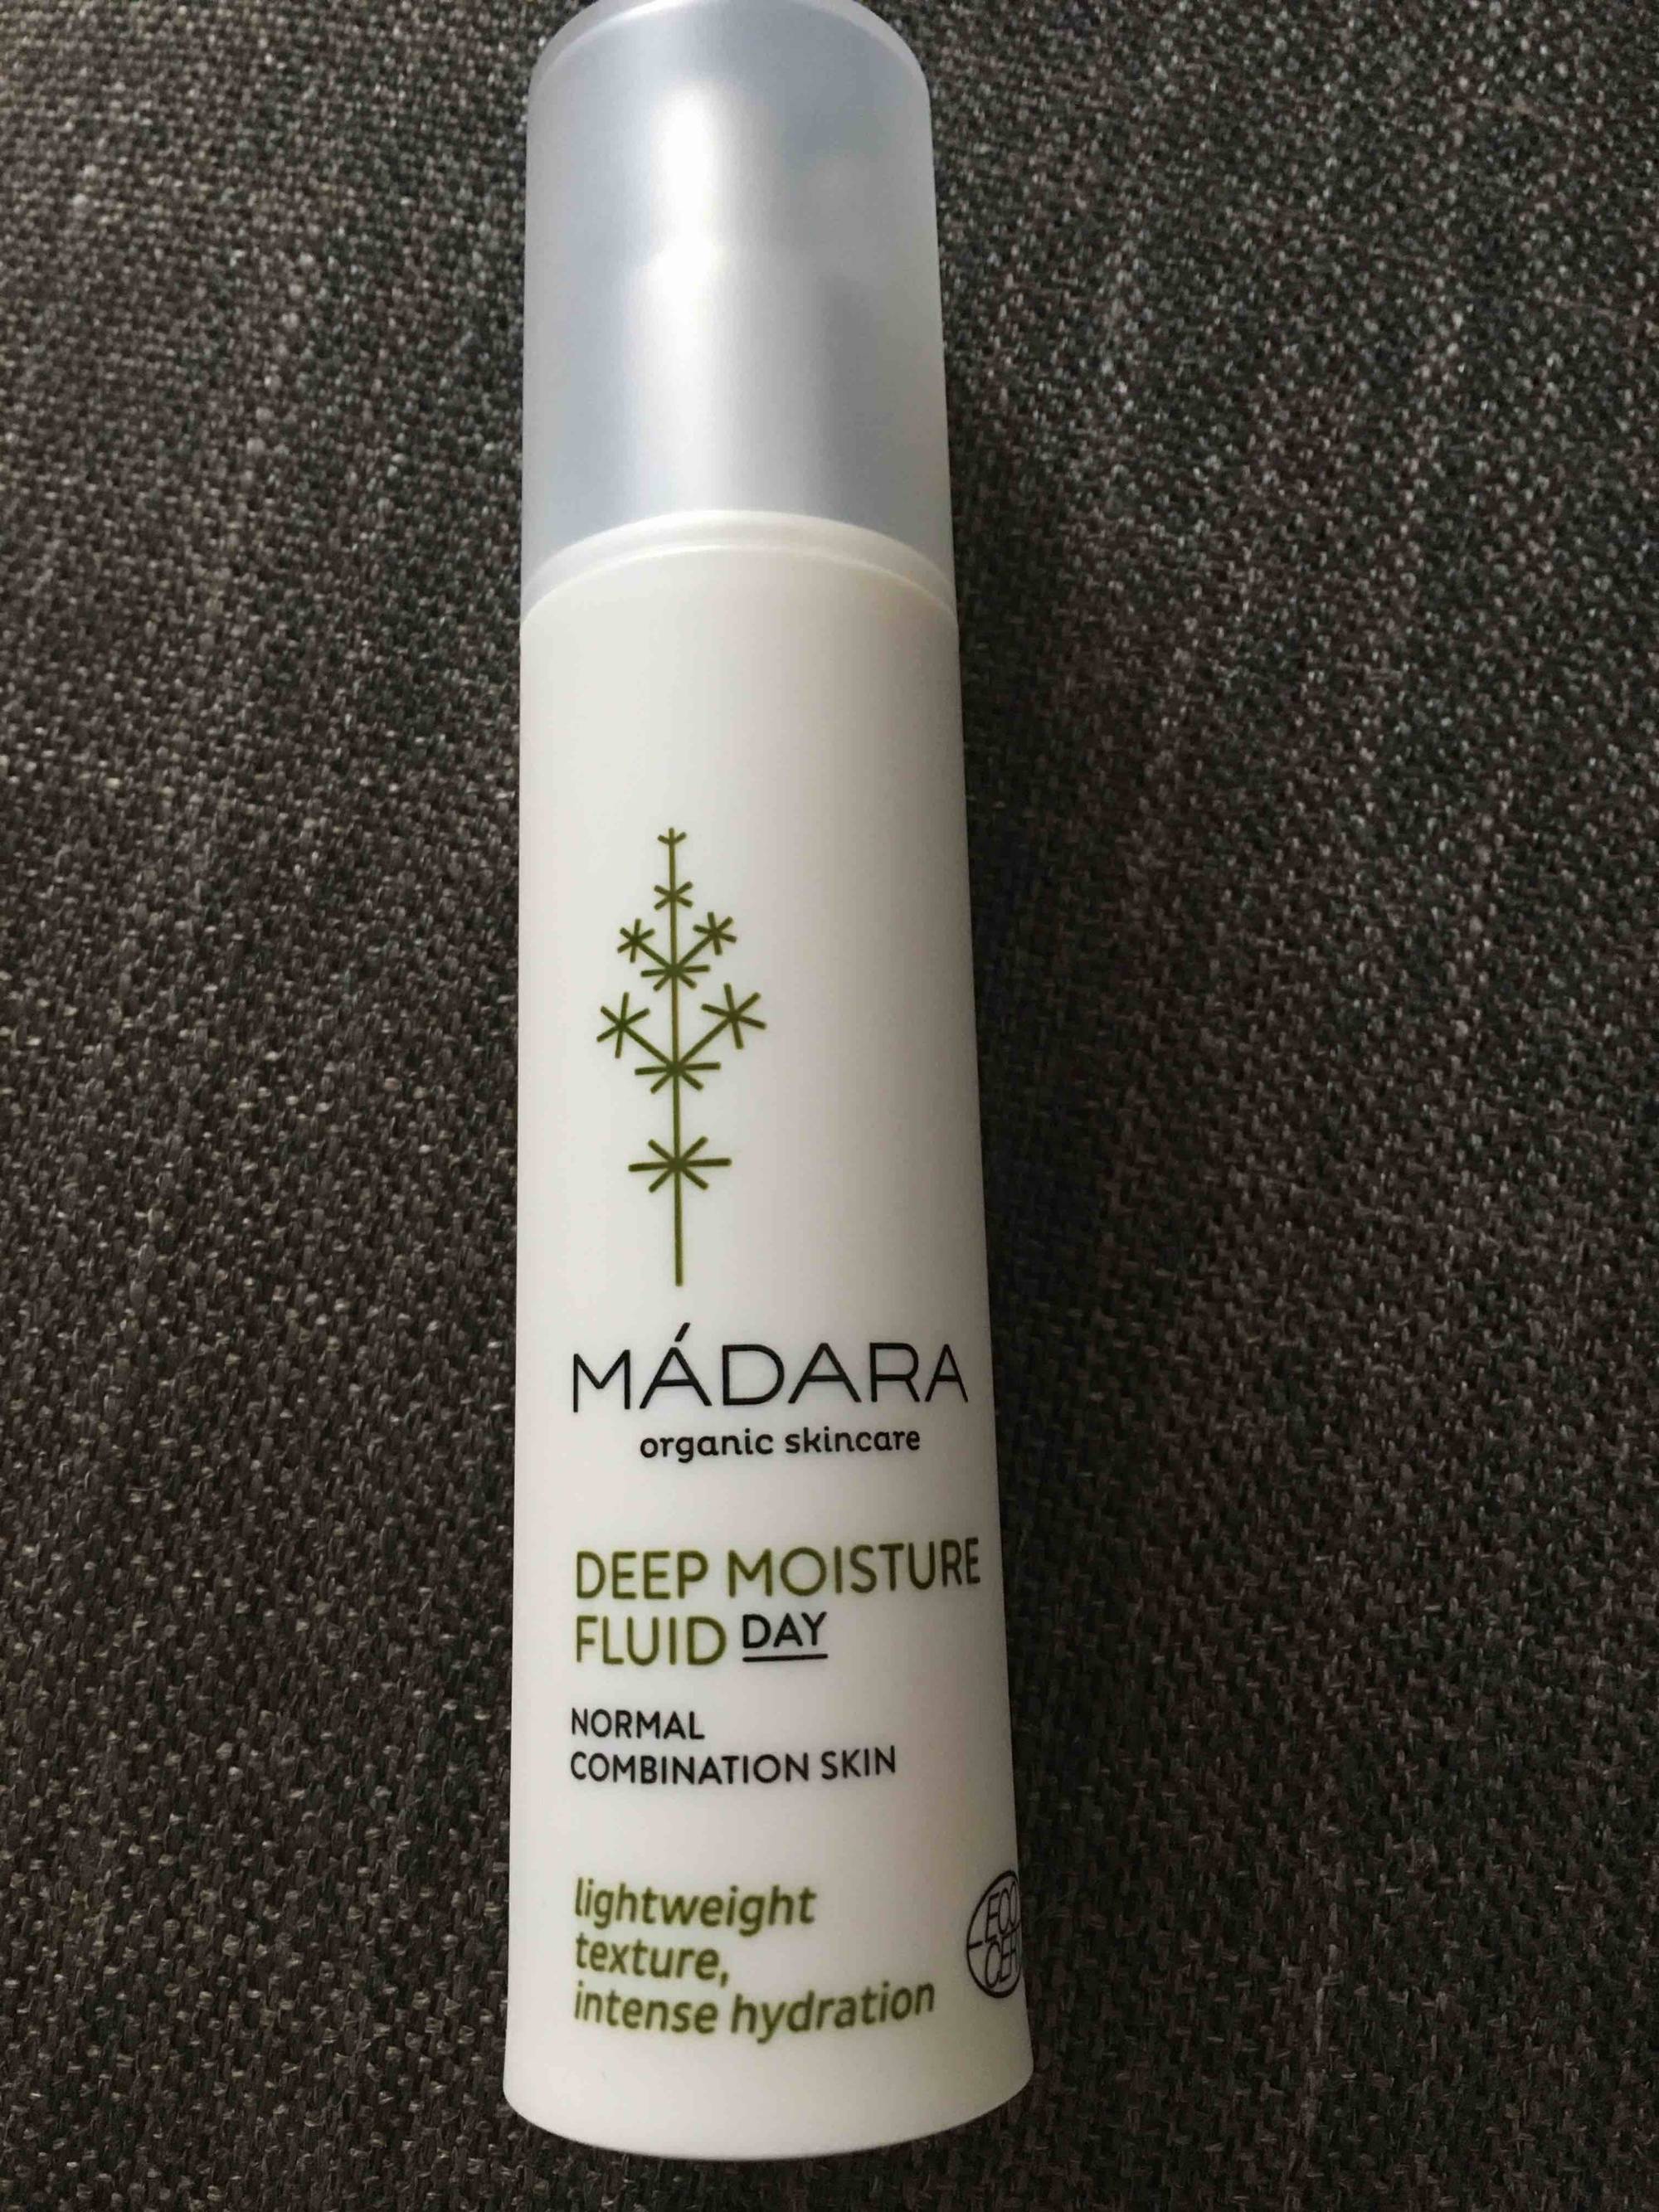 MÁDARA - Deep moisture fluid day